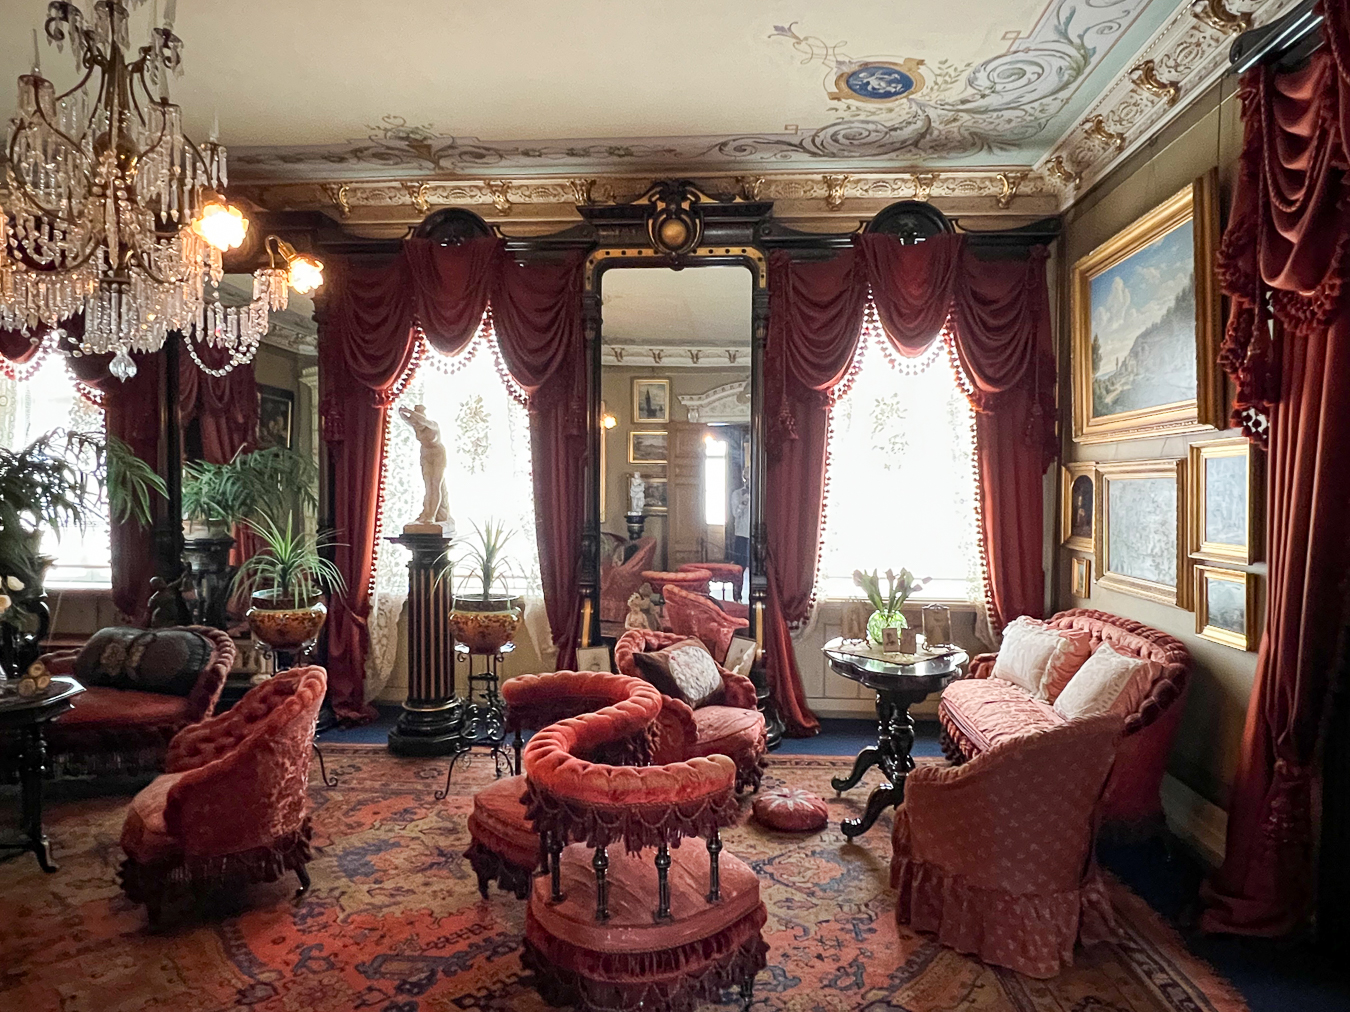 Billede af et rum i Klunkehjemmet, et eksempel på dansk klunkestilog design fra perioden 1880-1900, med overdådig indretning og rige tekstiler